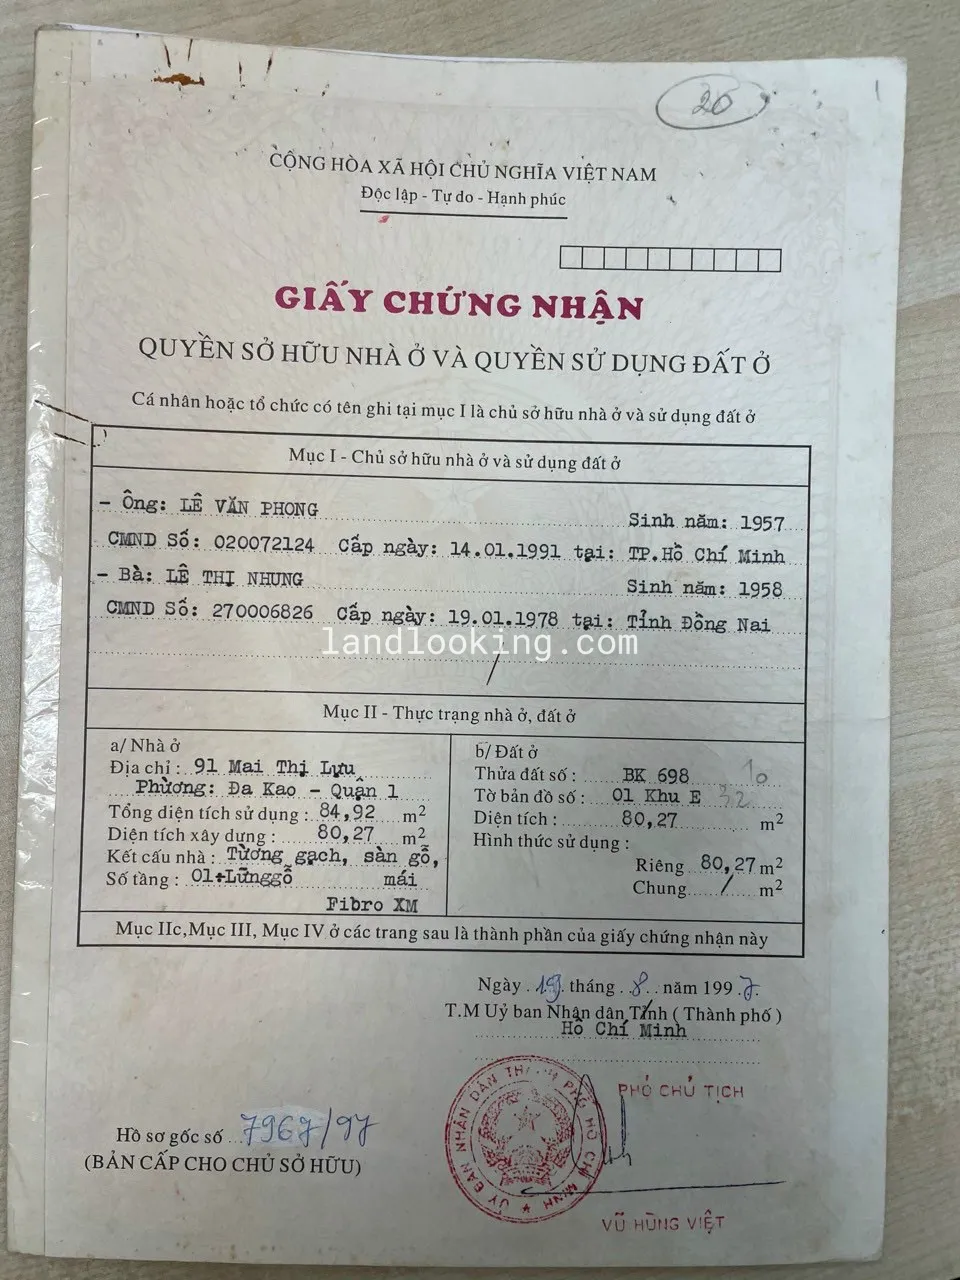 91, Mai Thị Lựu, Phường Đa Kao, Quận 1, Hồ Chí Minh